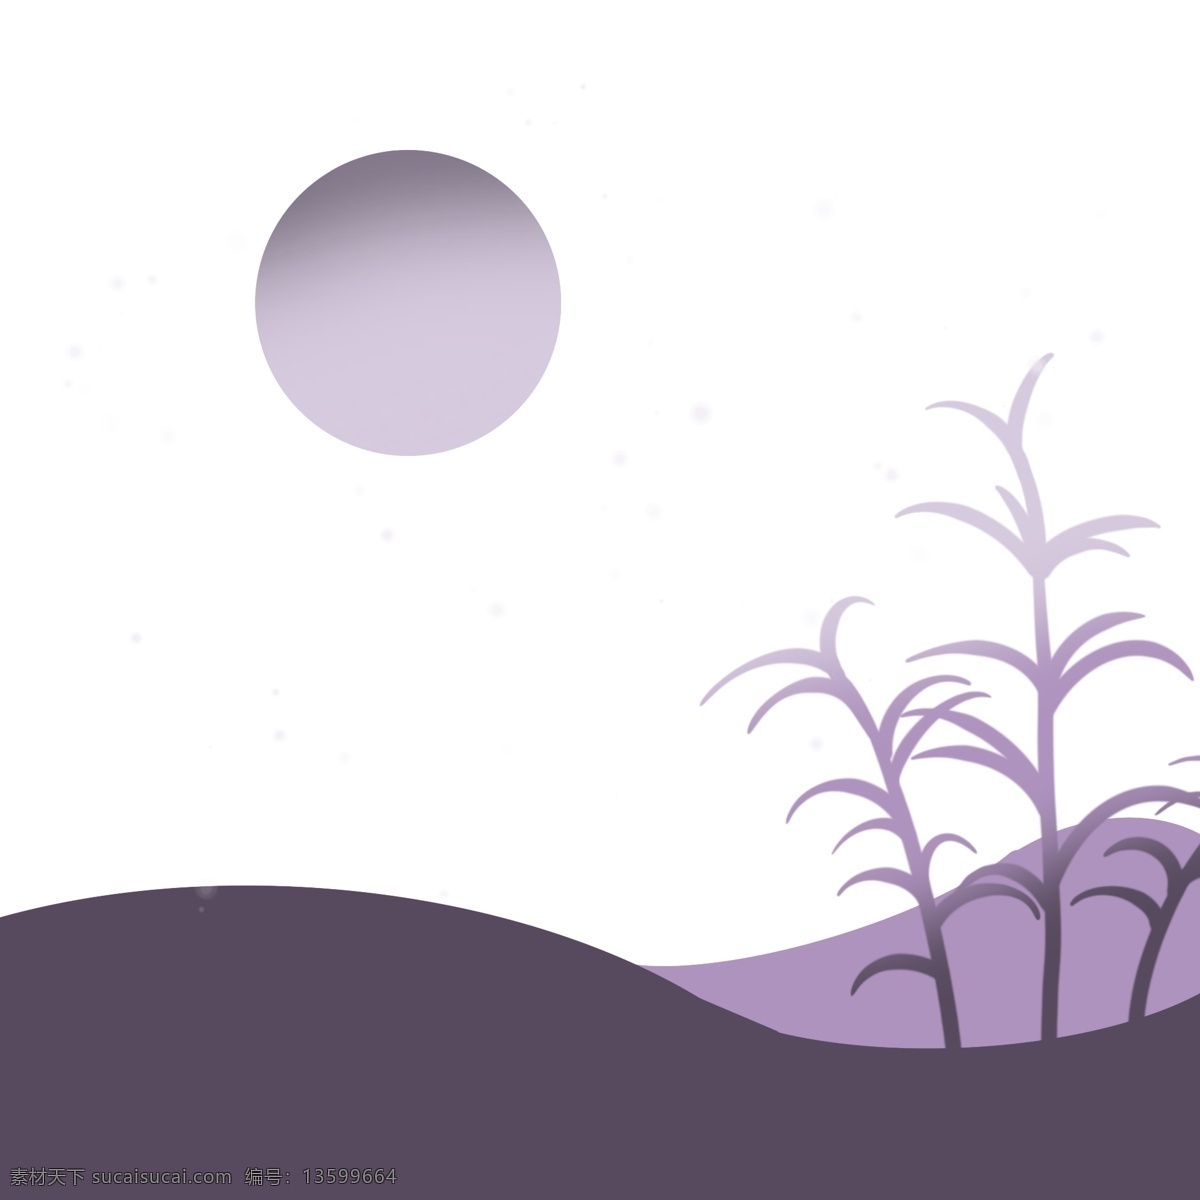 紫色 月夜 植物 小 清新 月亮 小清新 简约